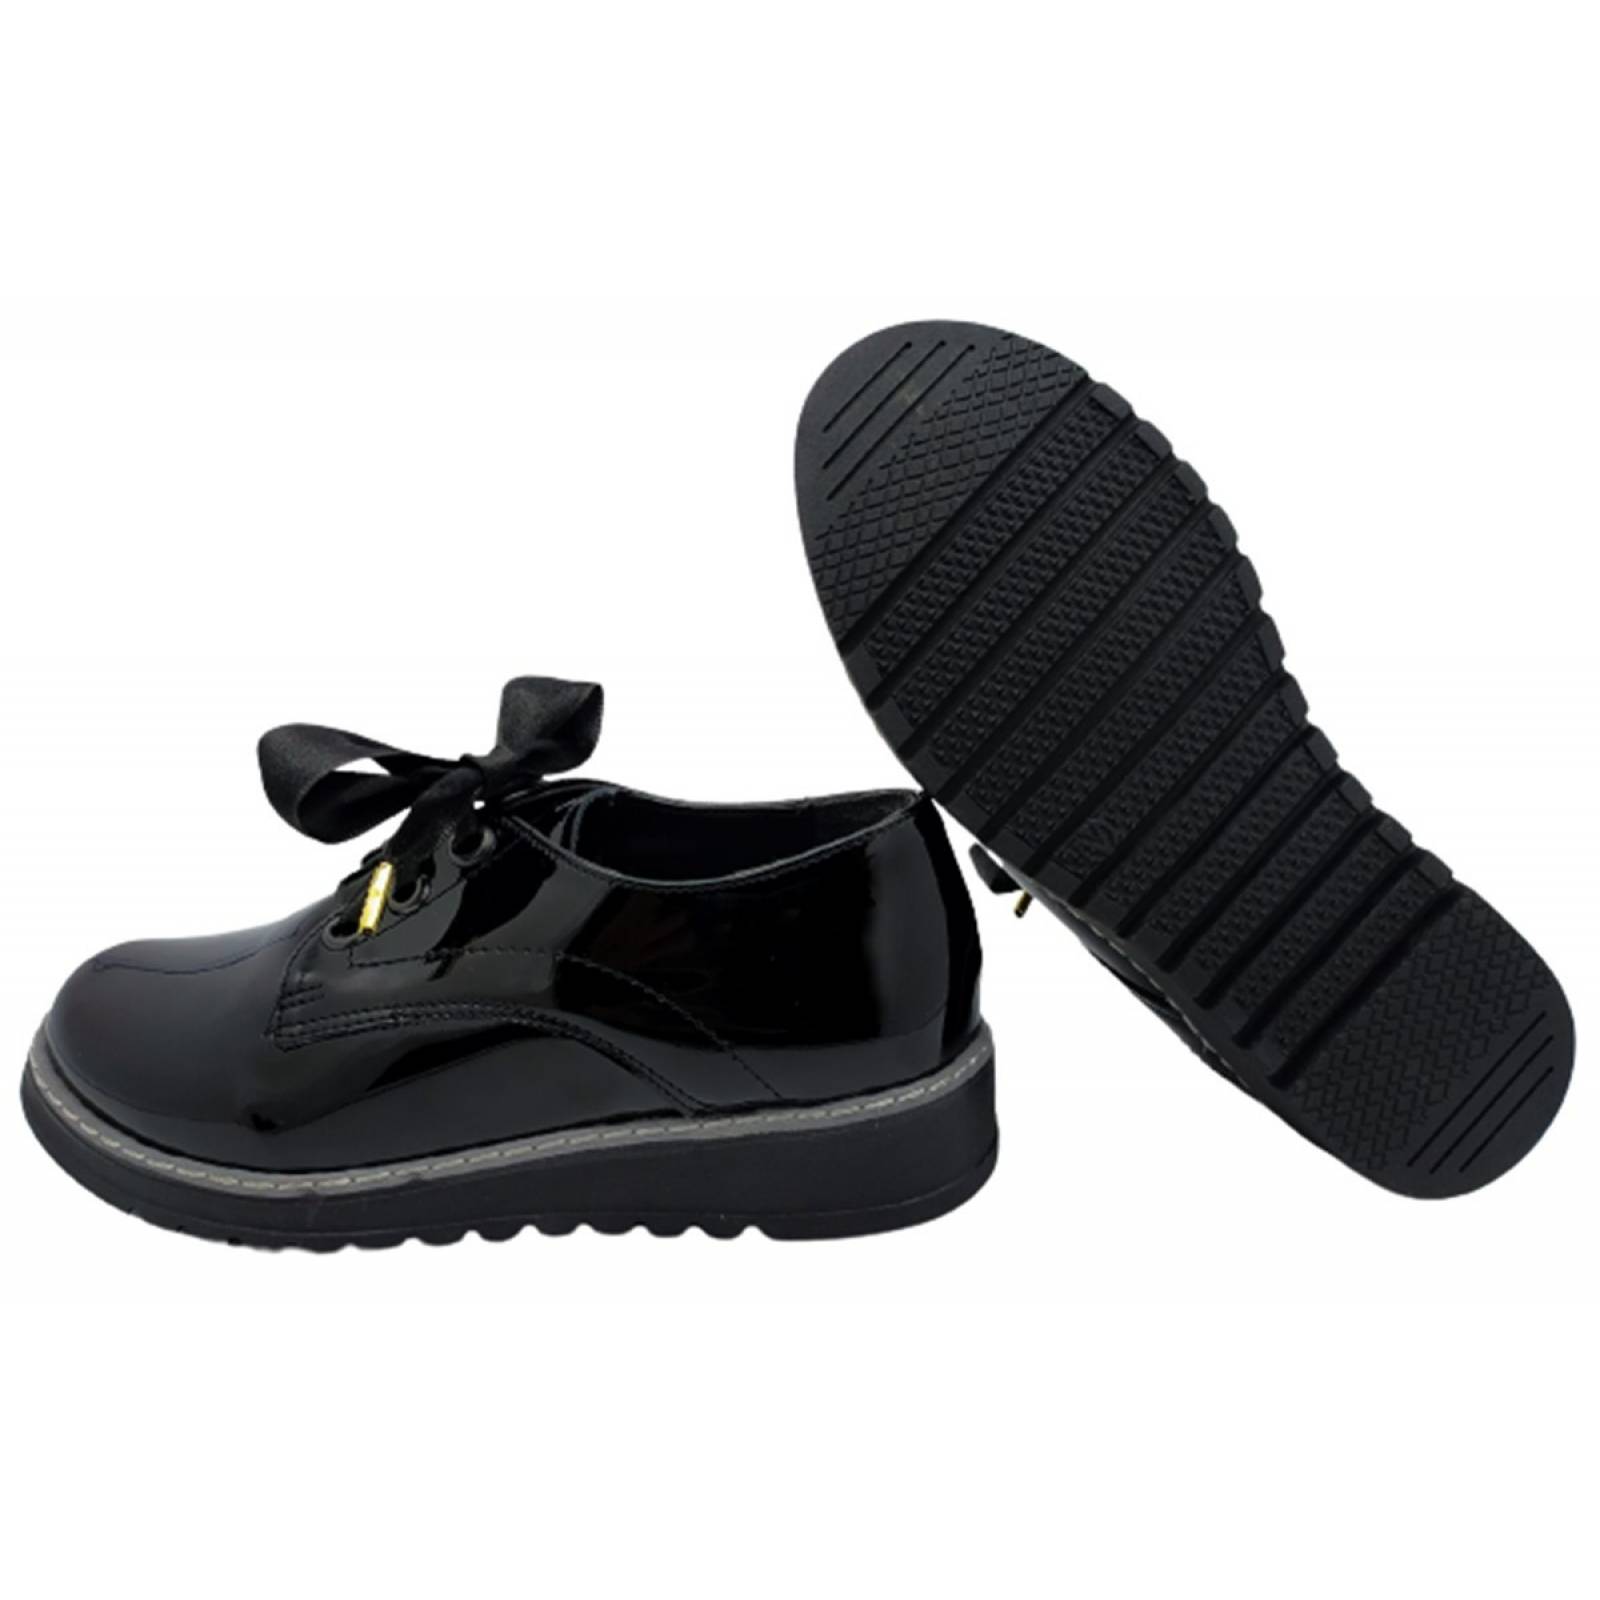 Zapatos Mujer Negro Escolar Niña Agujeta Casual Moda 601-2-n